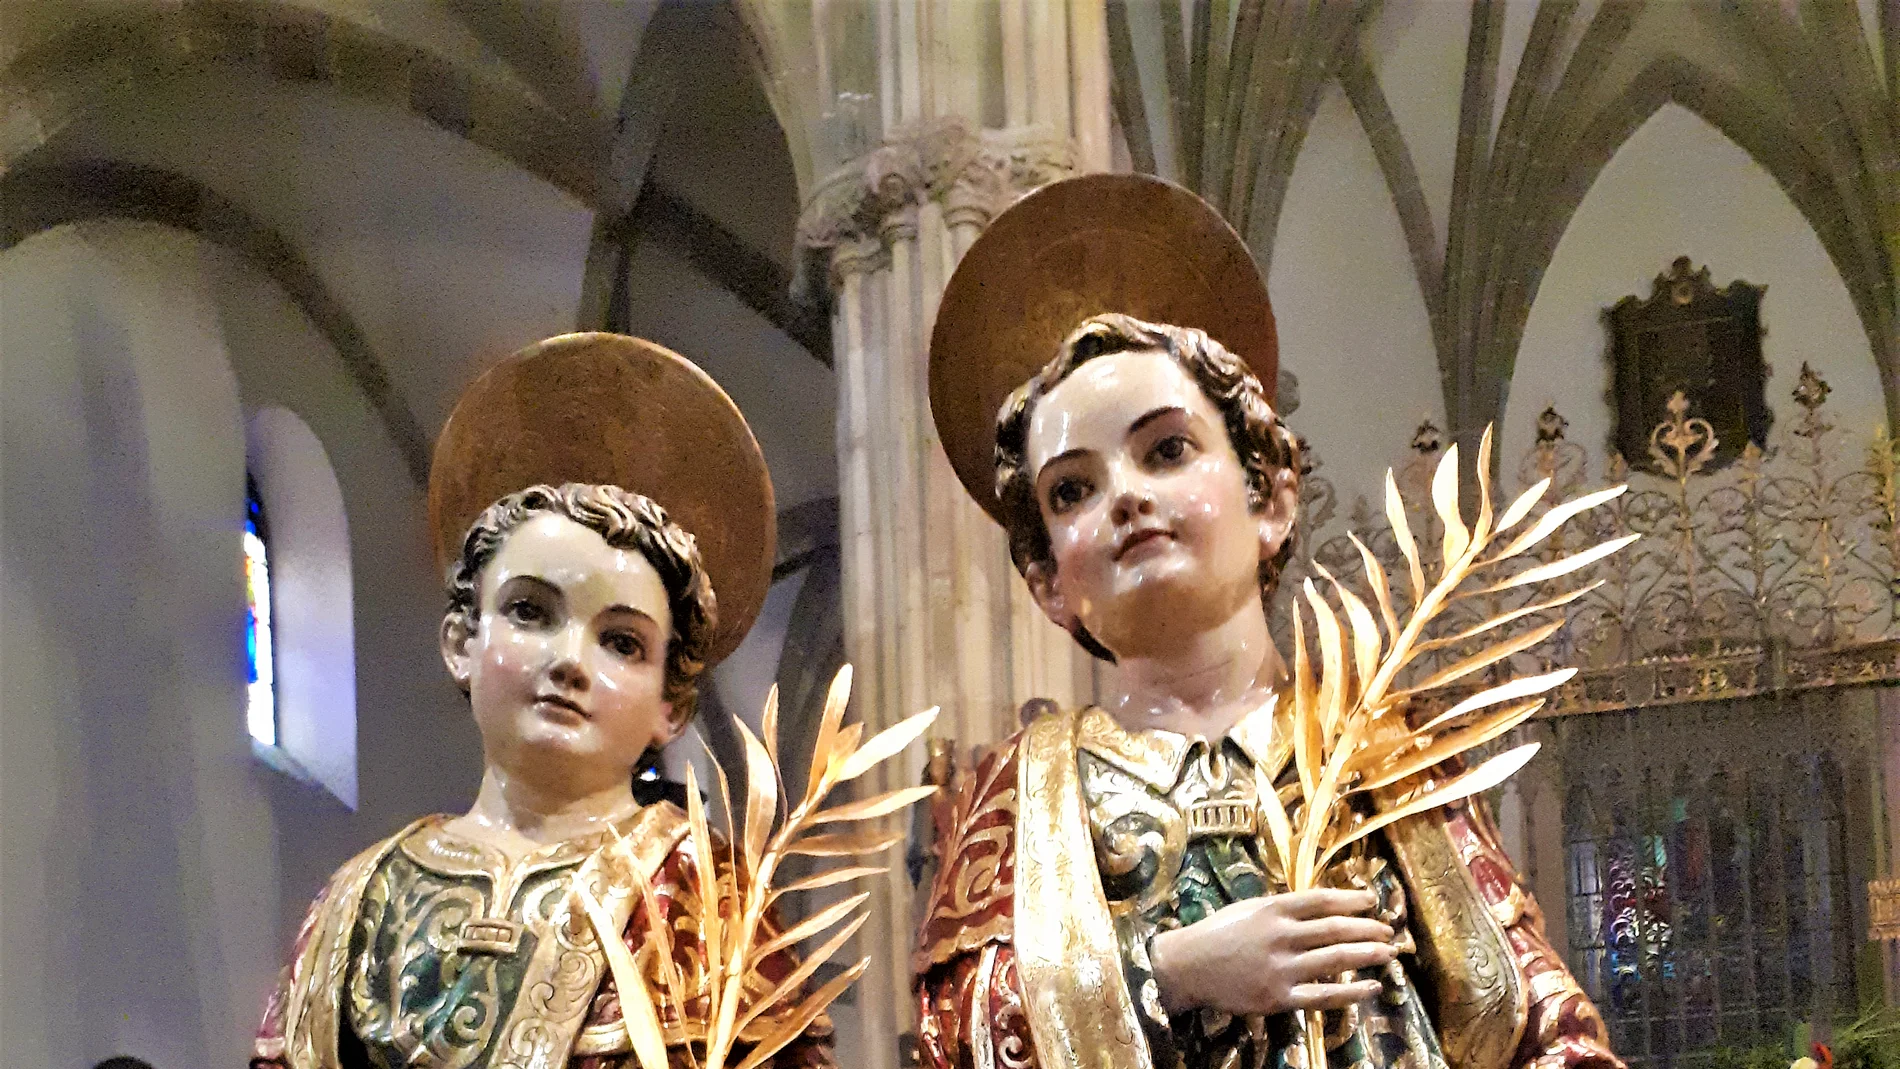 Esculturas de San Justo y San Pastor en la Catedral de Alcalá de Henares